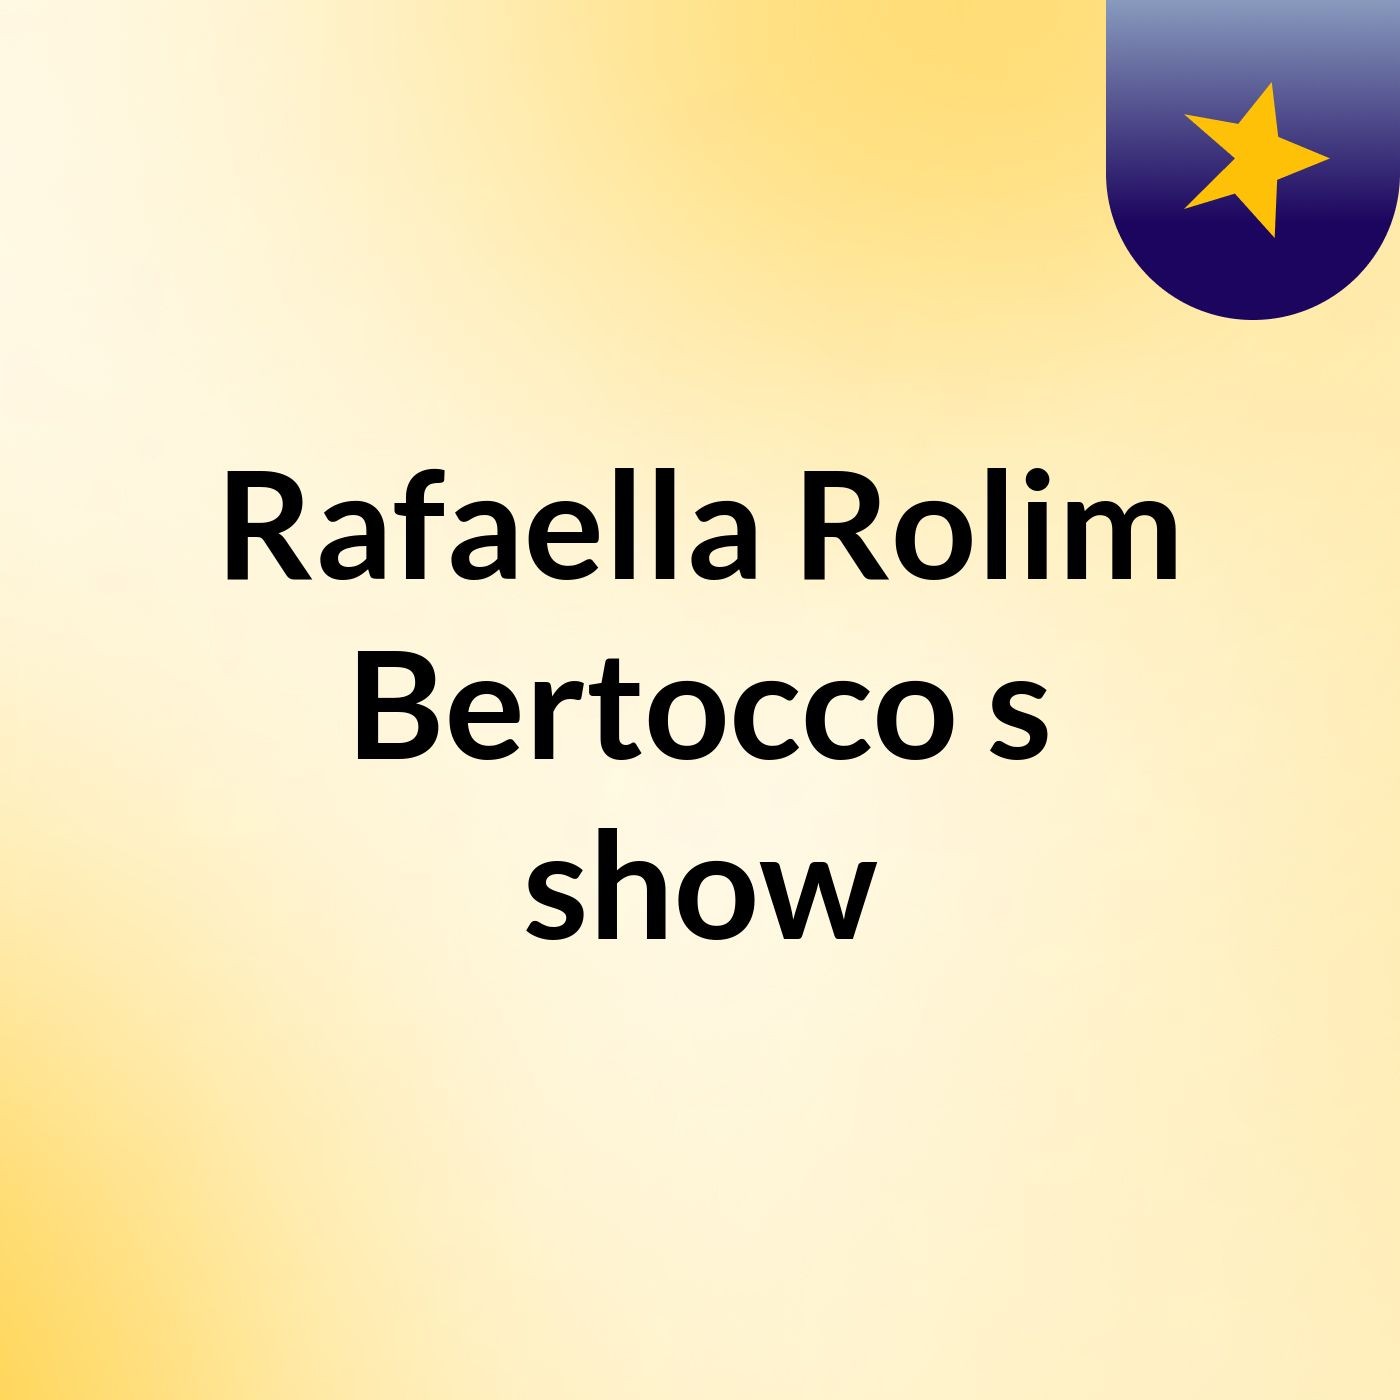 Rafaella Rolim Bertocco's show